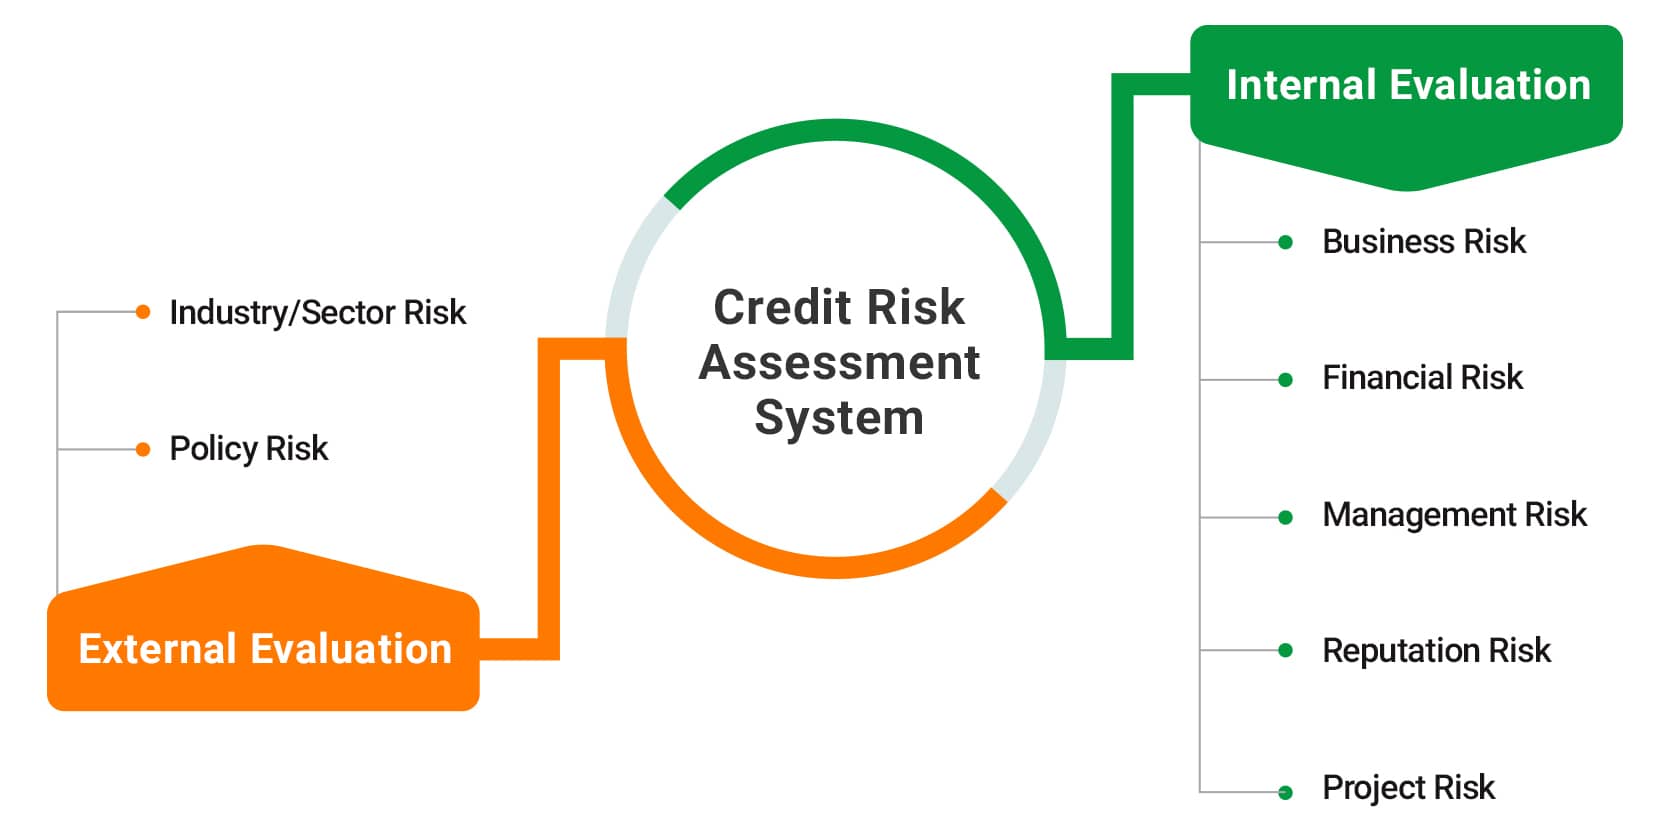 Credit Risk Assessment System